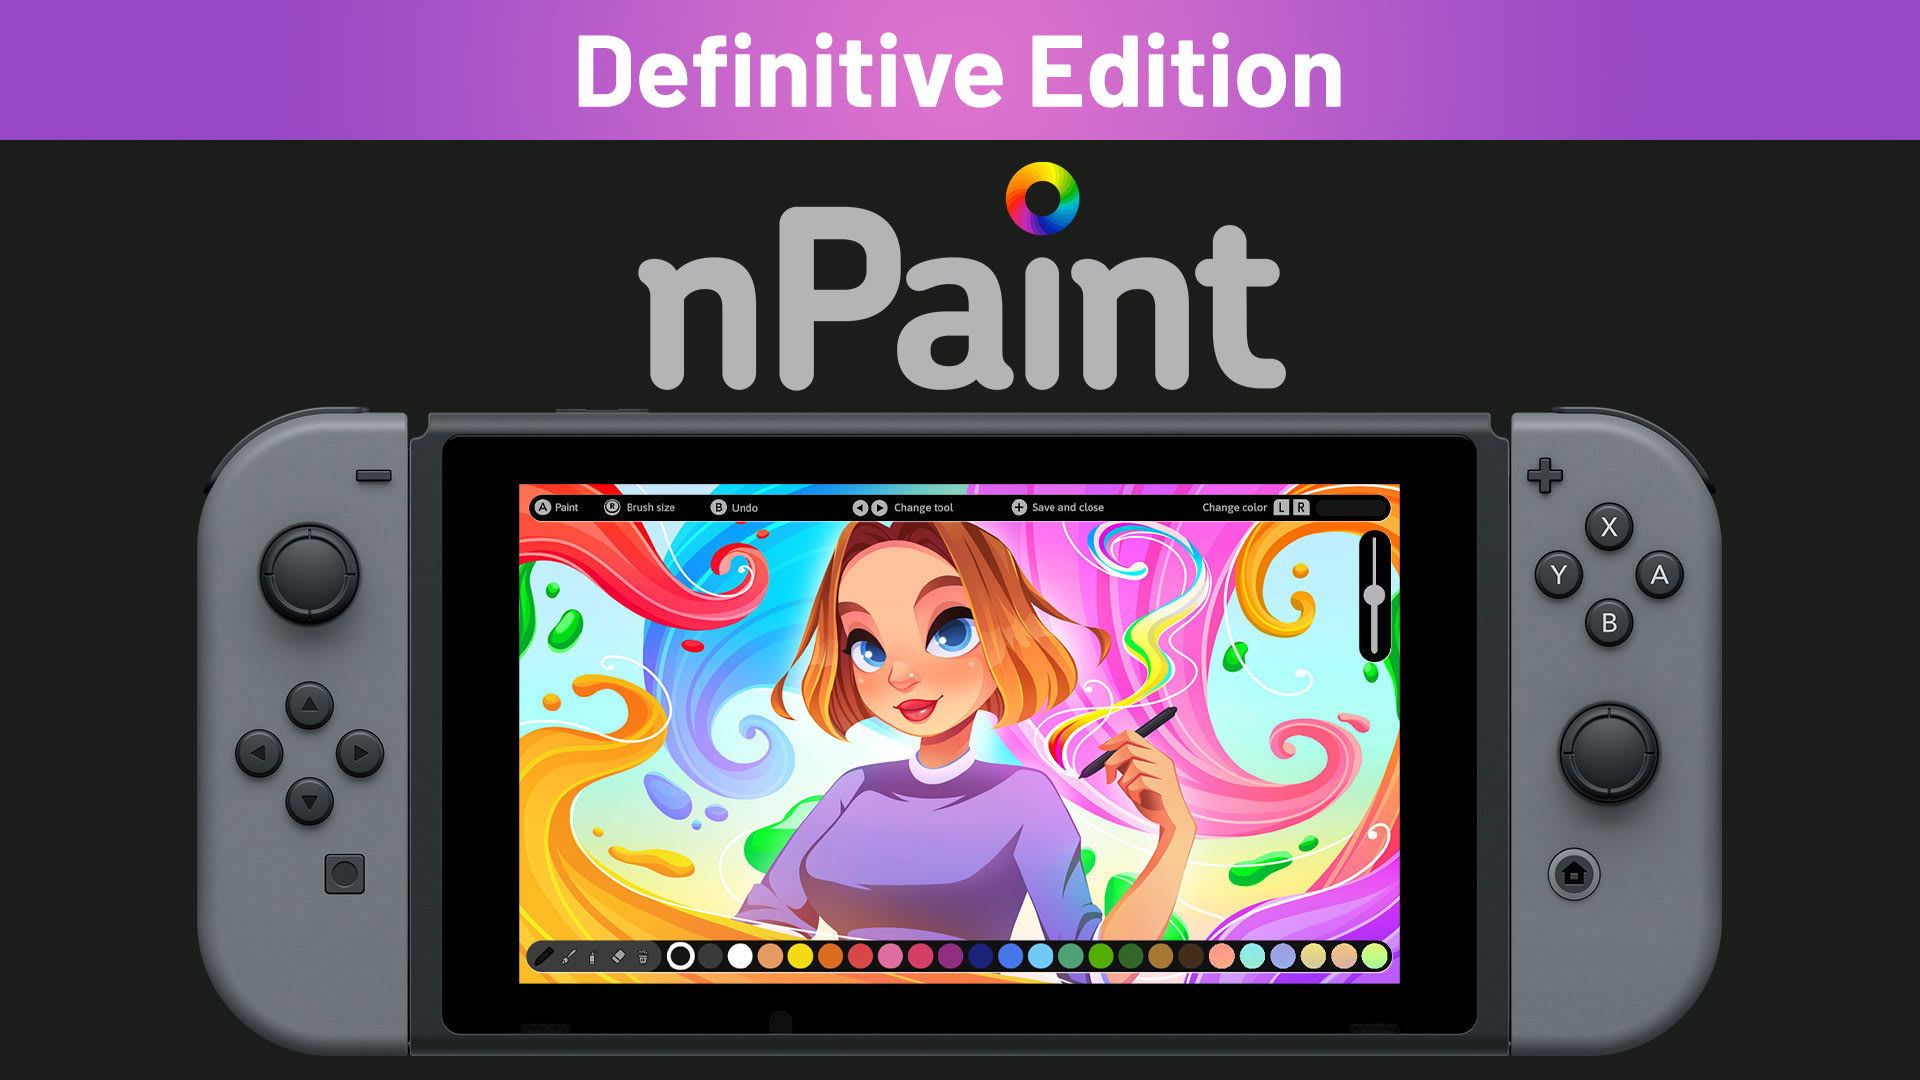 nPaint Definitive Edition